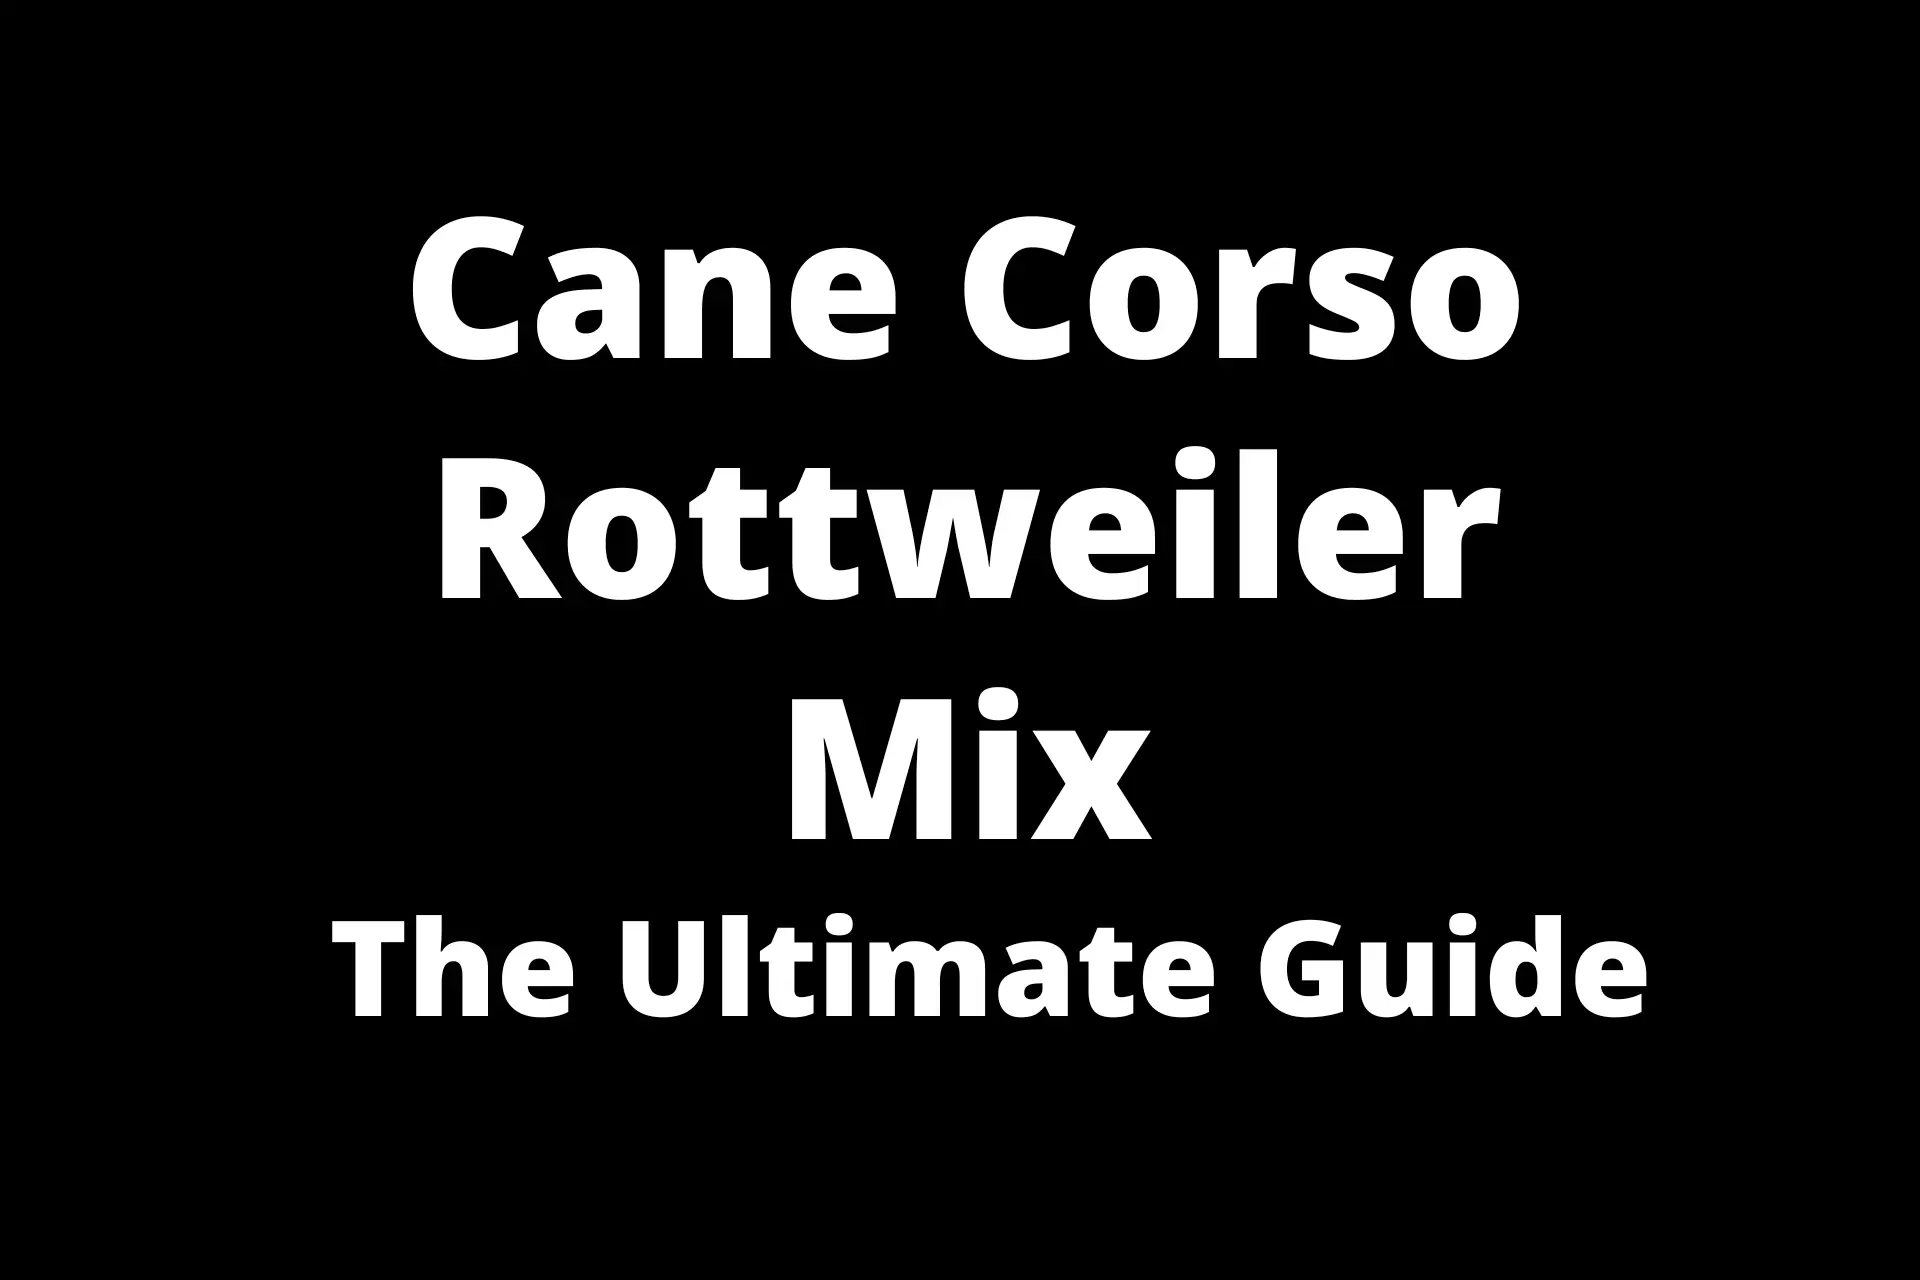 Cane Corso Rottweiler Mix